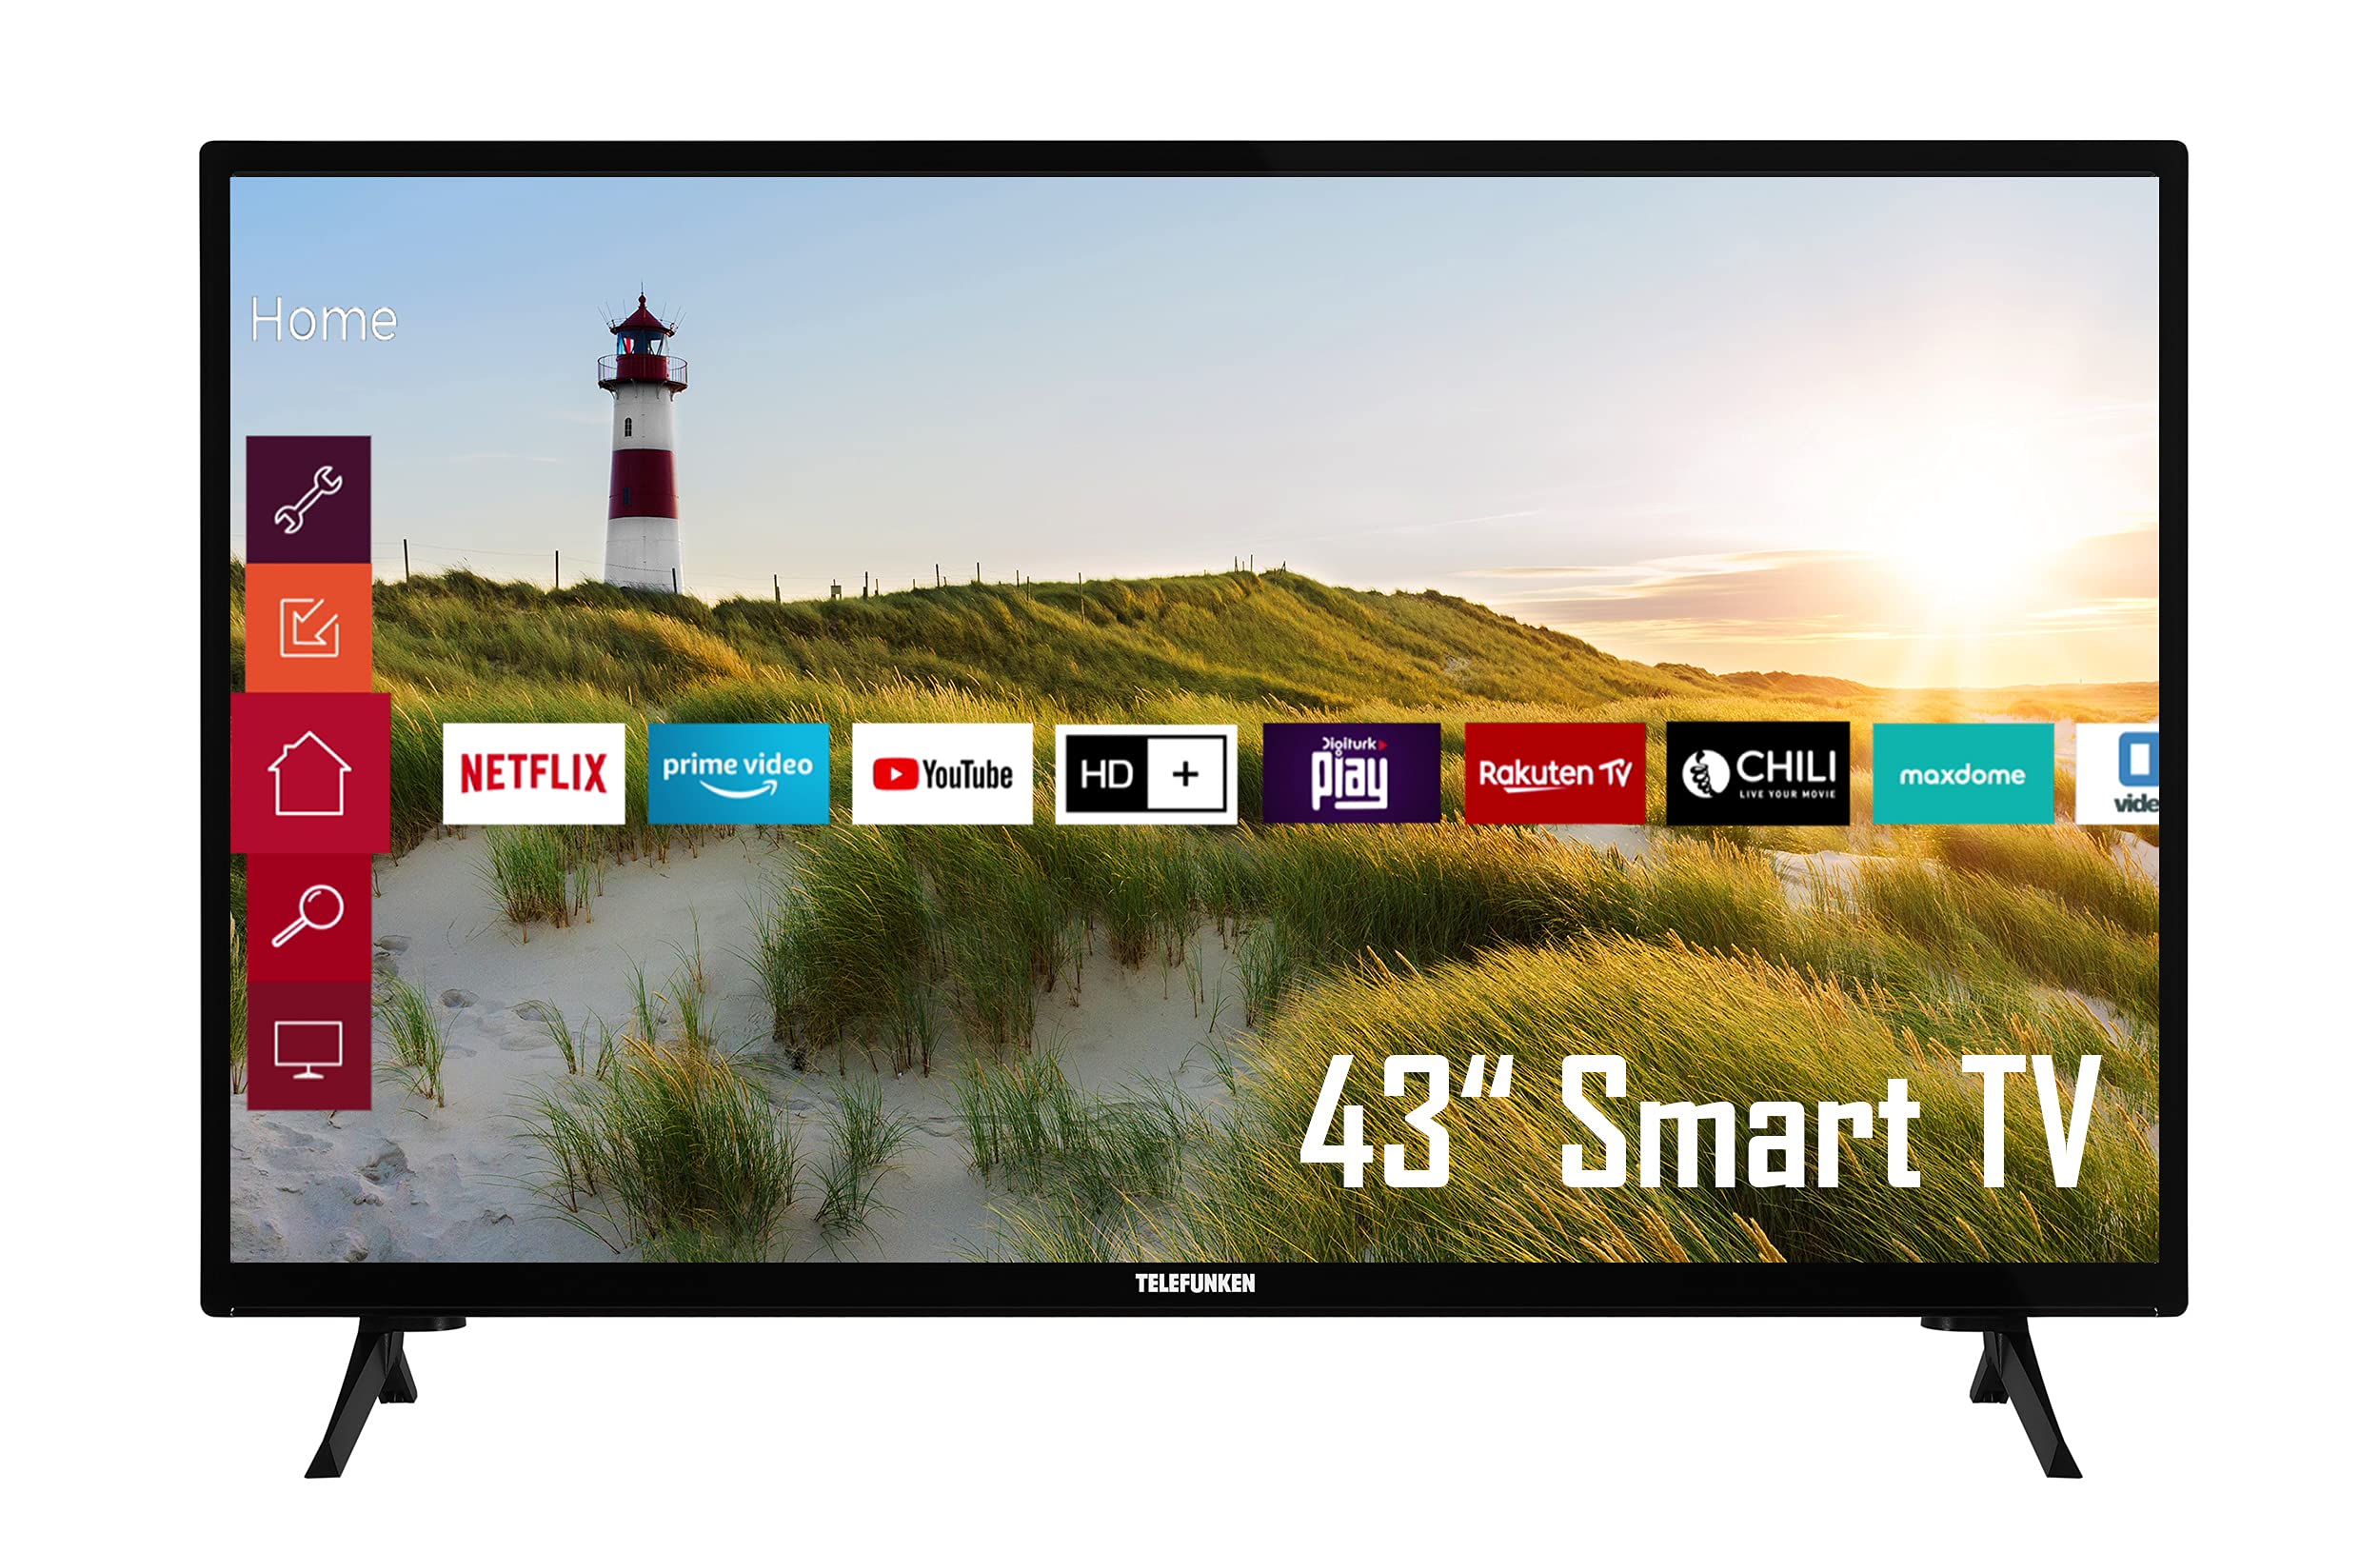 Telefunken XF43K550 43 Zoll Fernseher / Smart TV (Full HD, HDR, Triple-Tuner) - 6 Monate HD+ inklusive [2022] [Energieklasse E]